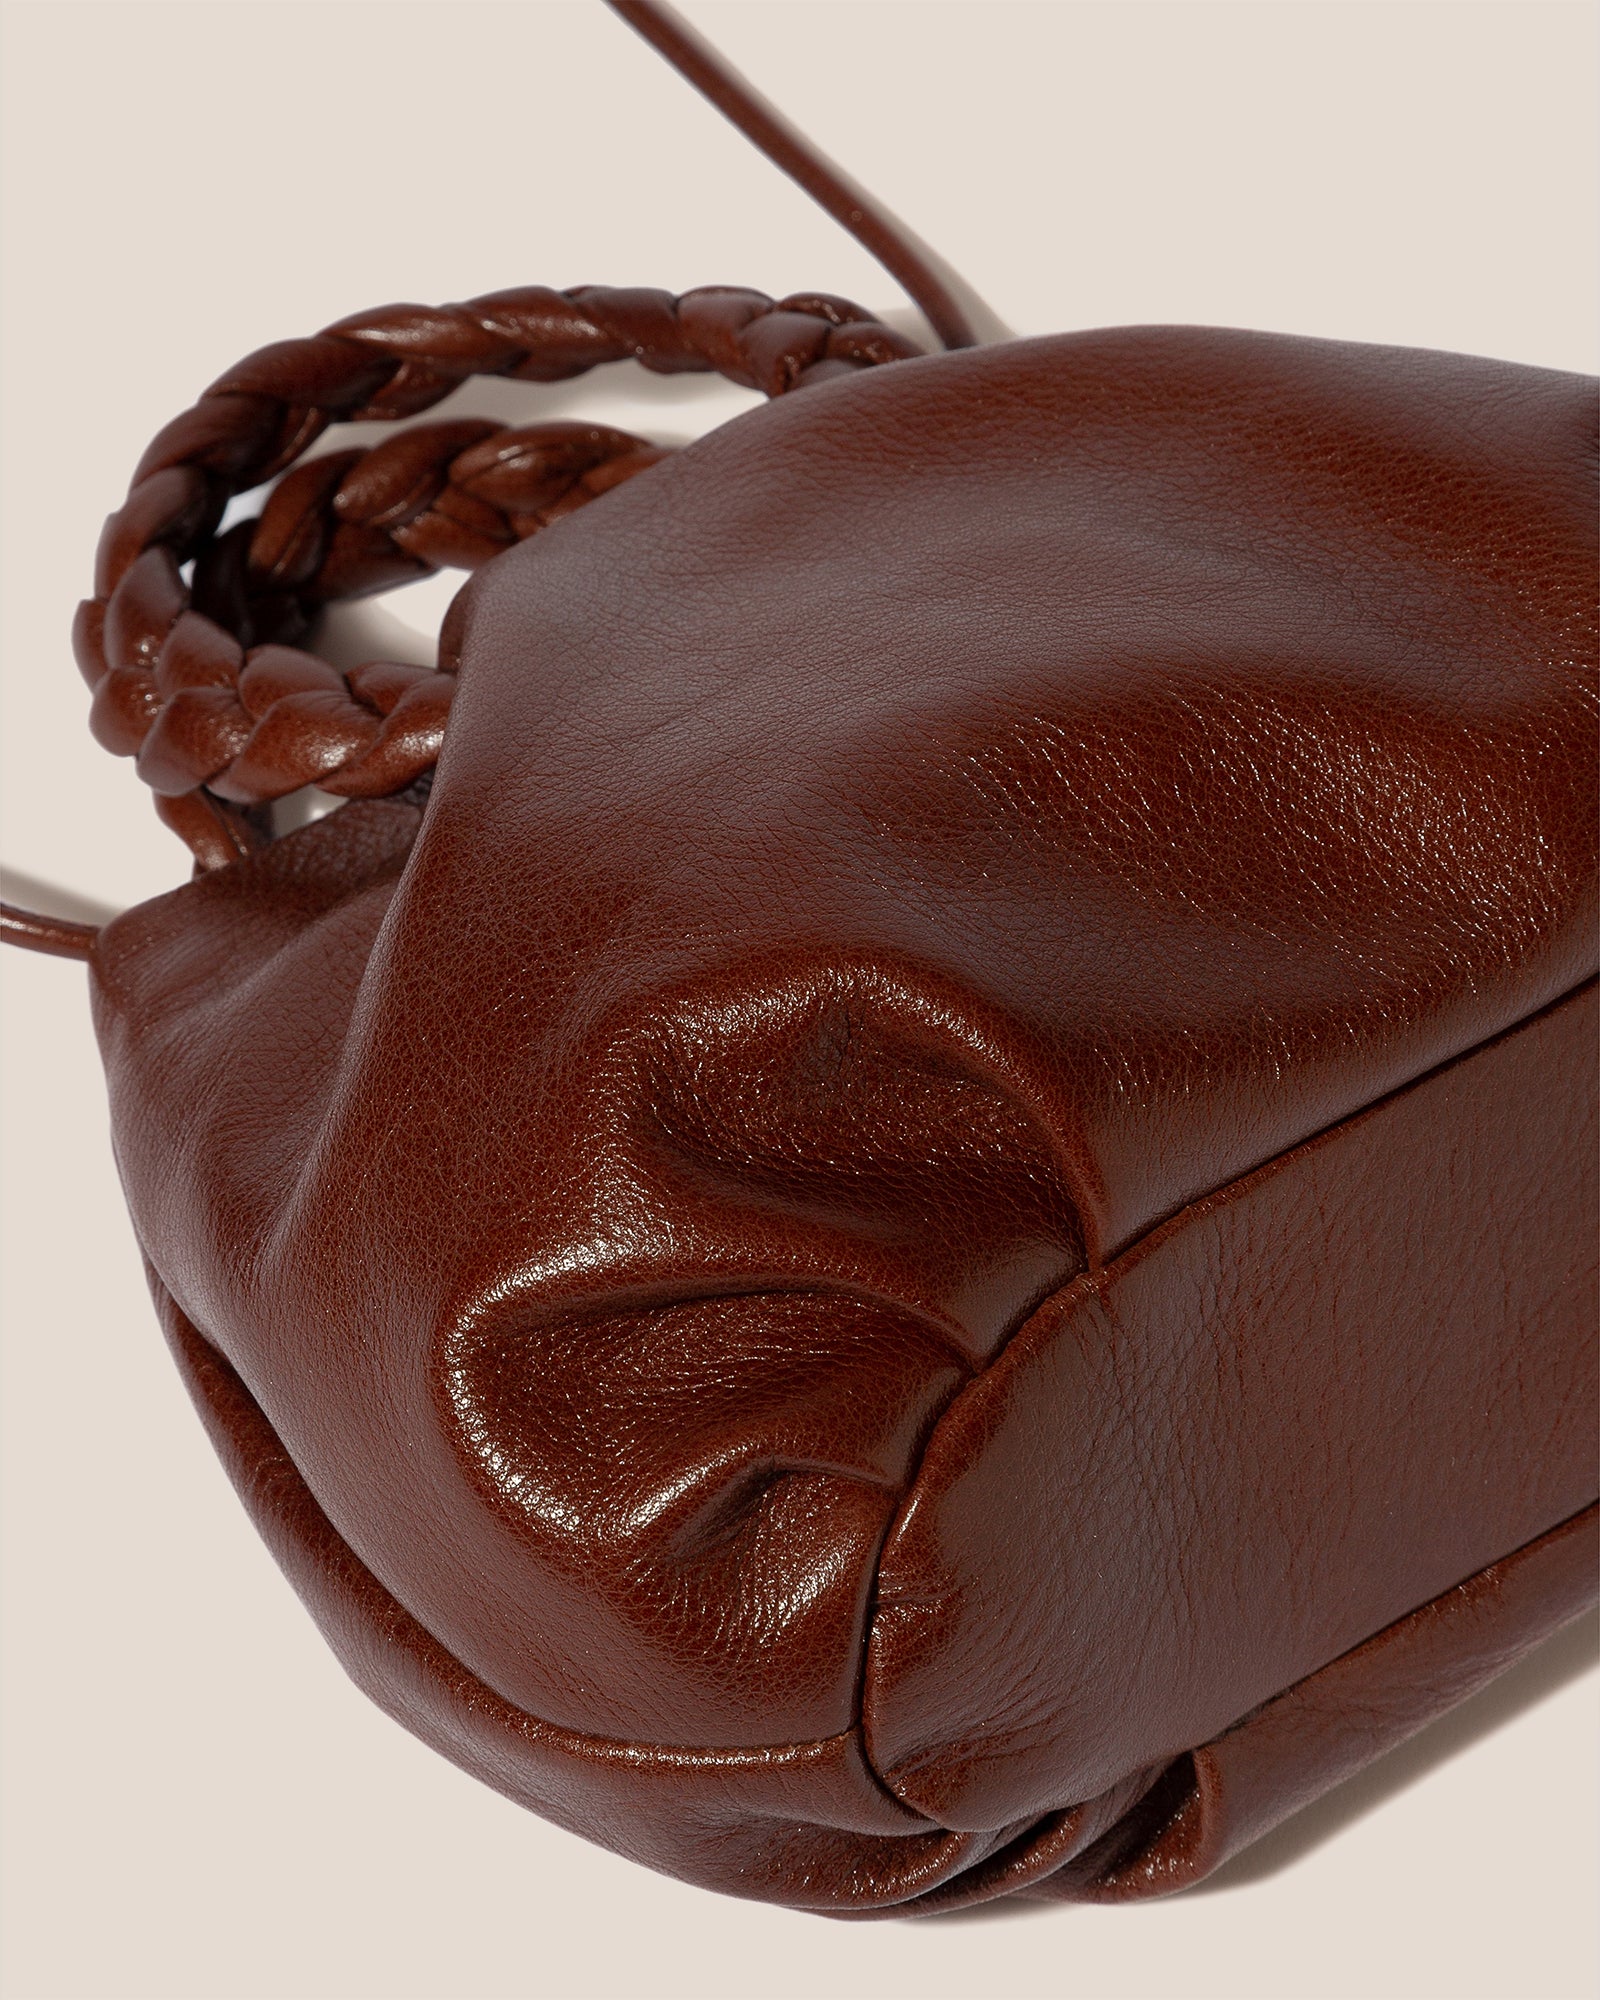 Medium bombon leather top handle bag - Hereu - Women